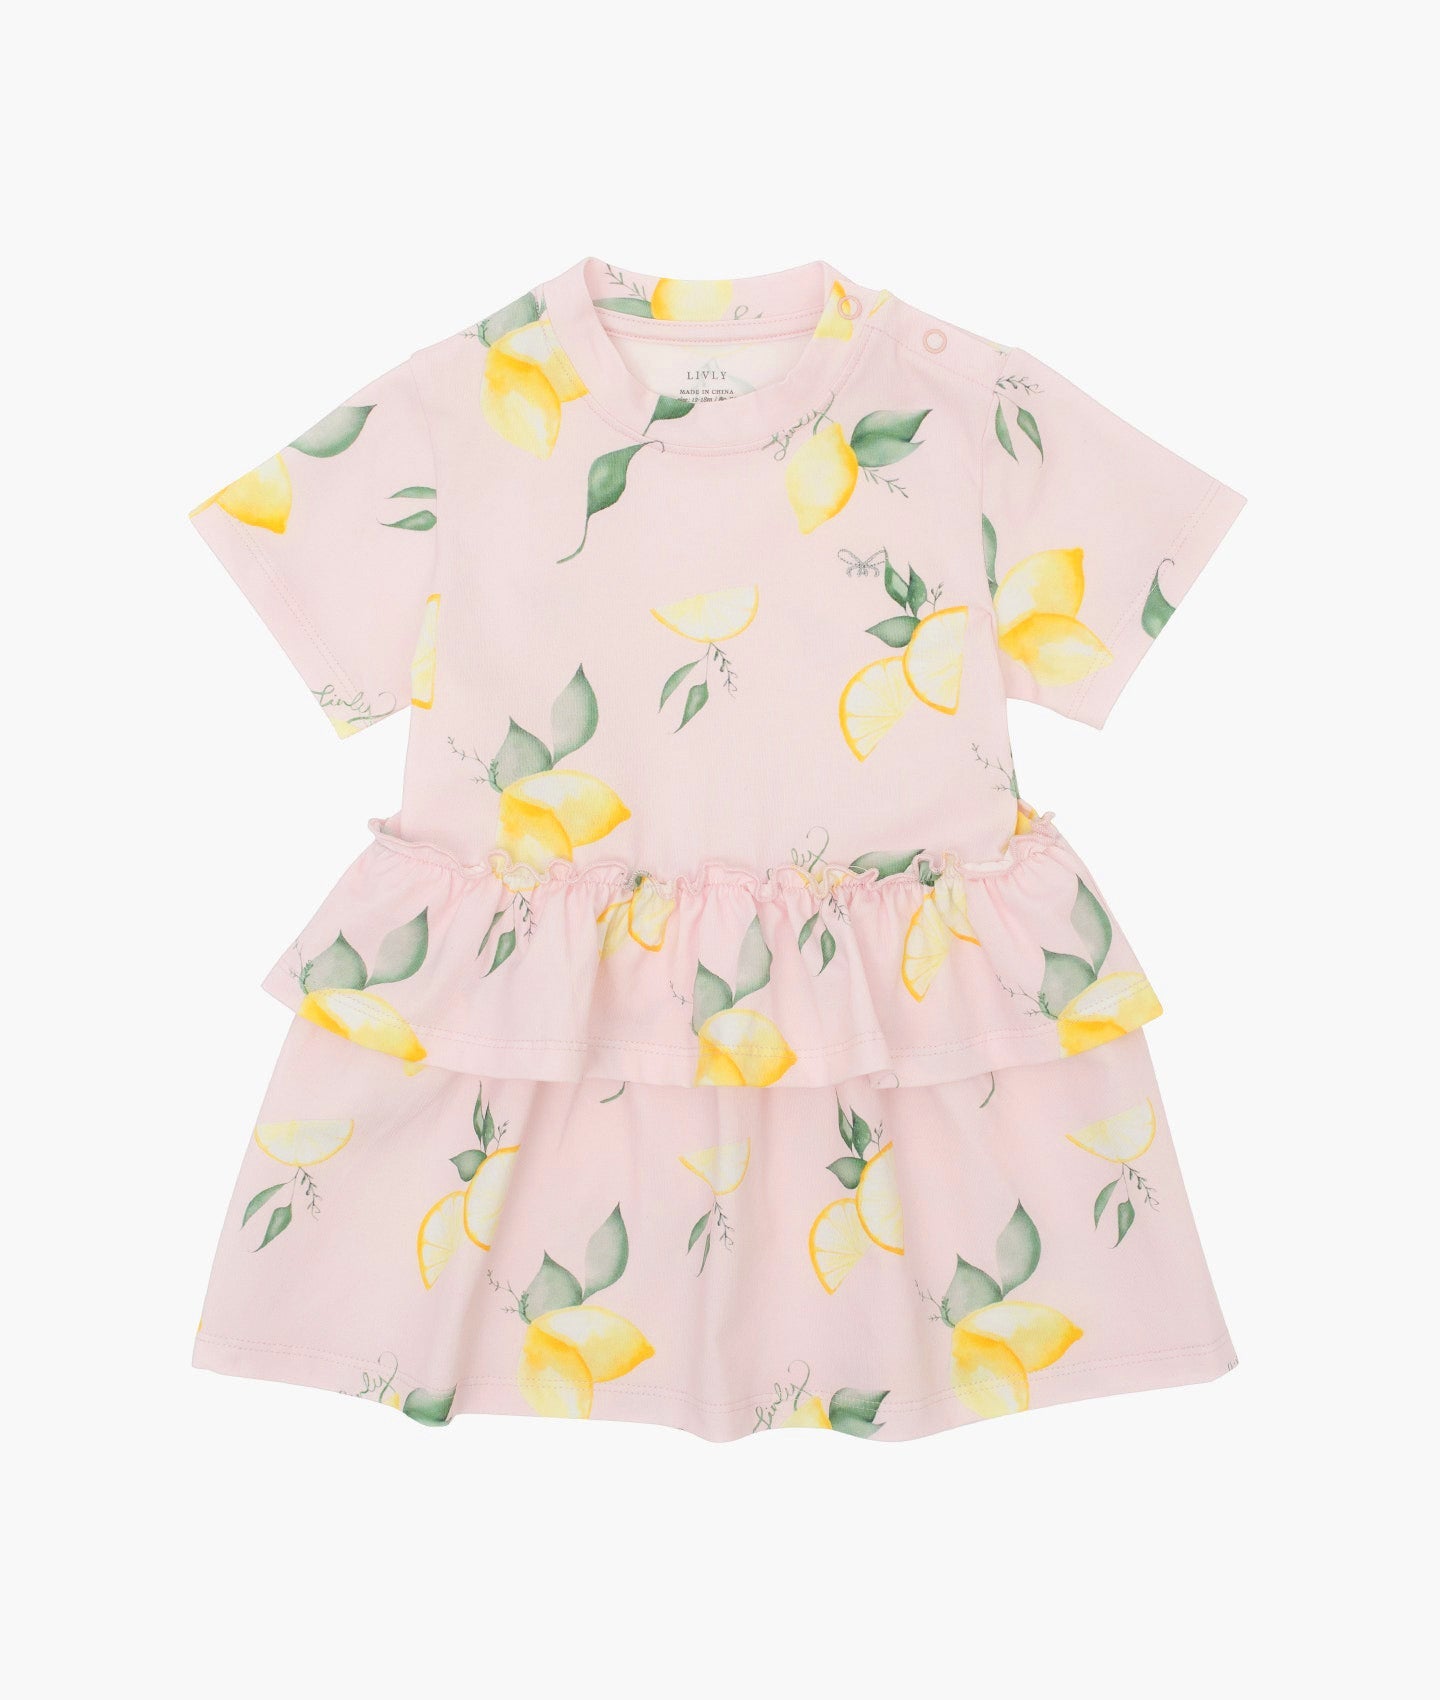 Lemons Lilly Dress